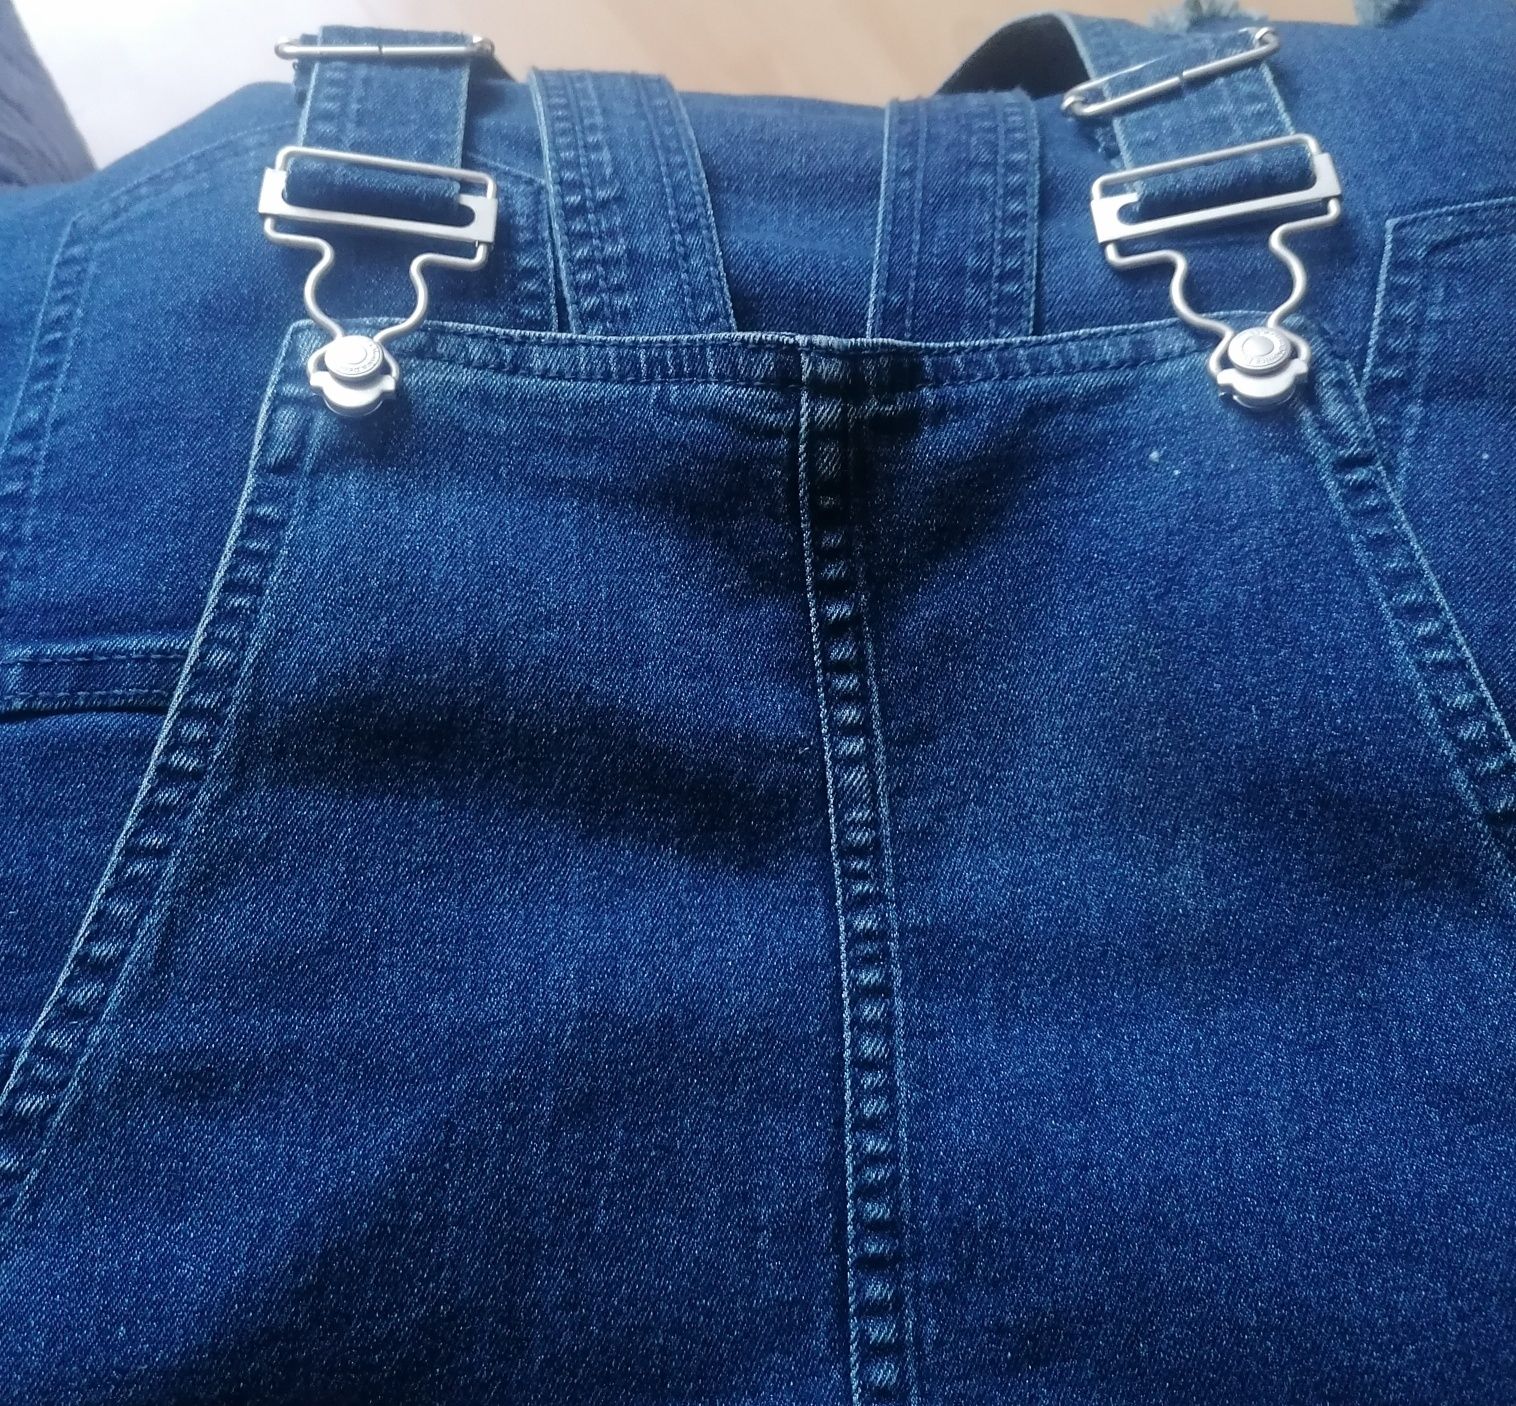 Spódnica jeansowa niebieska - ogrodniczka